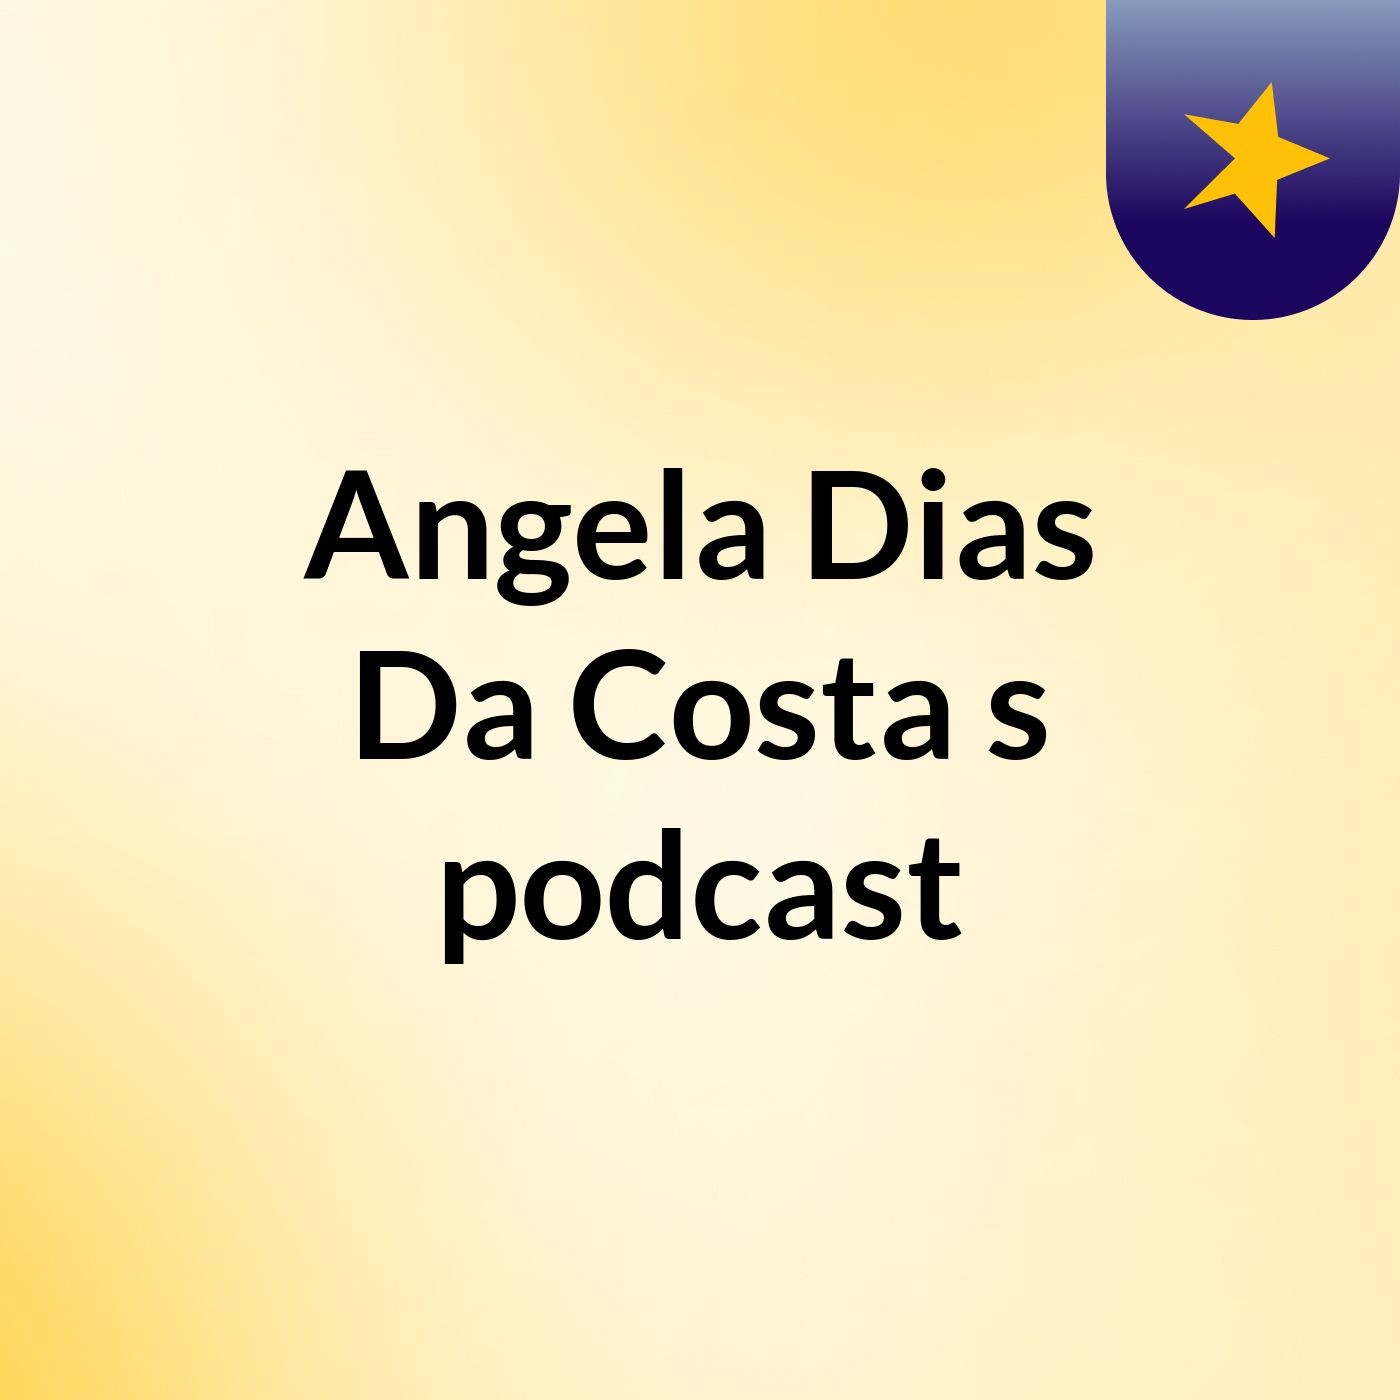 Angela Dias Da Costa's podcast